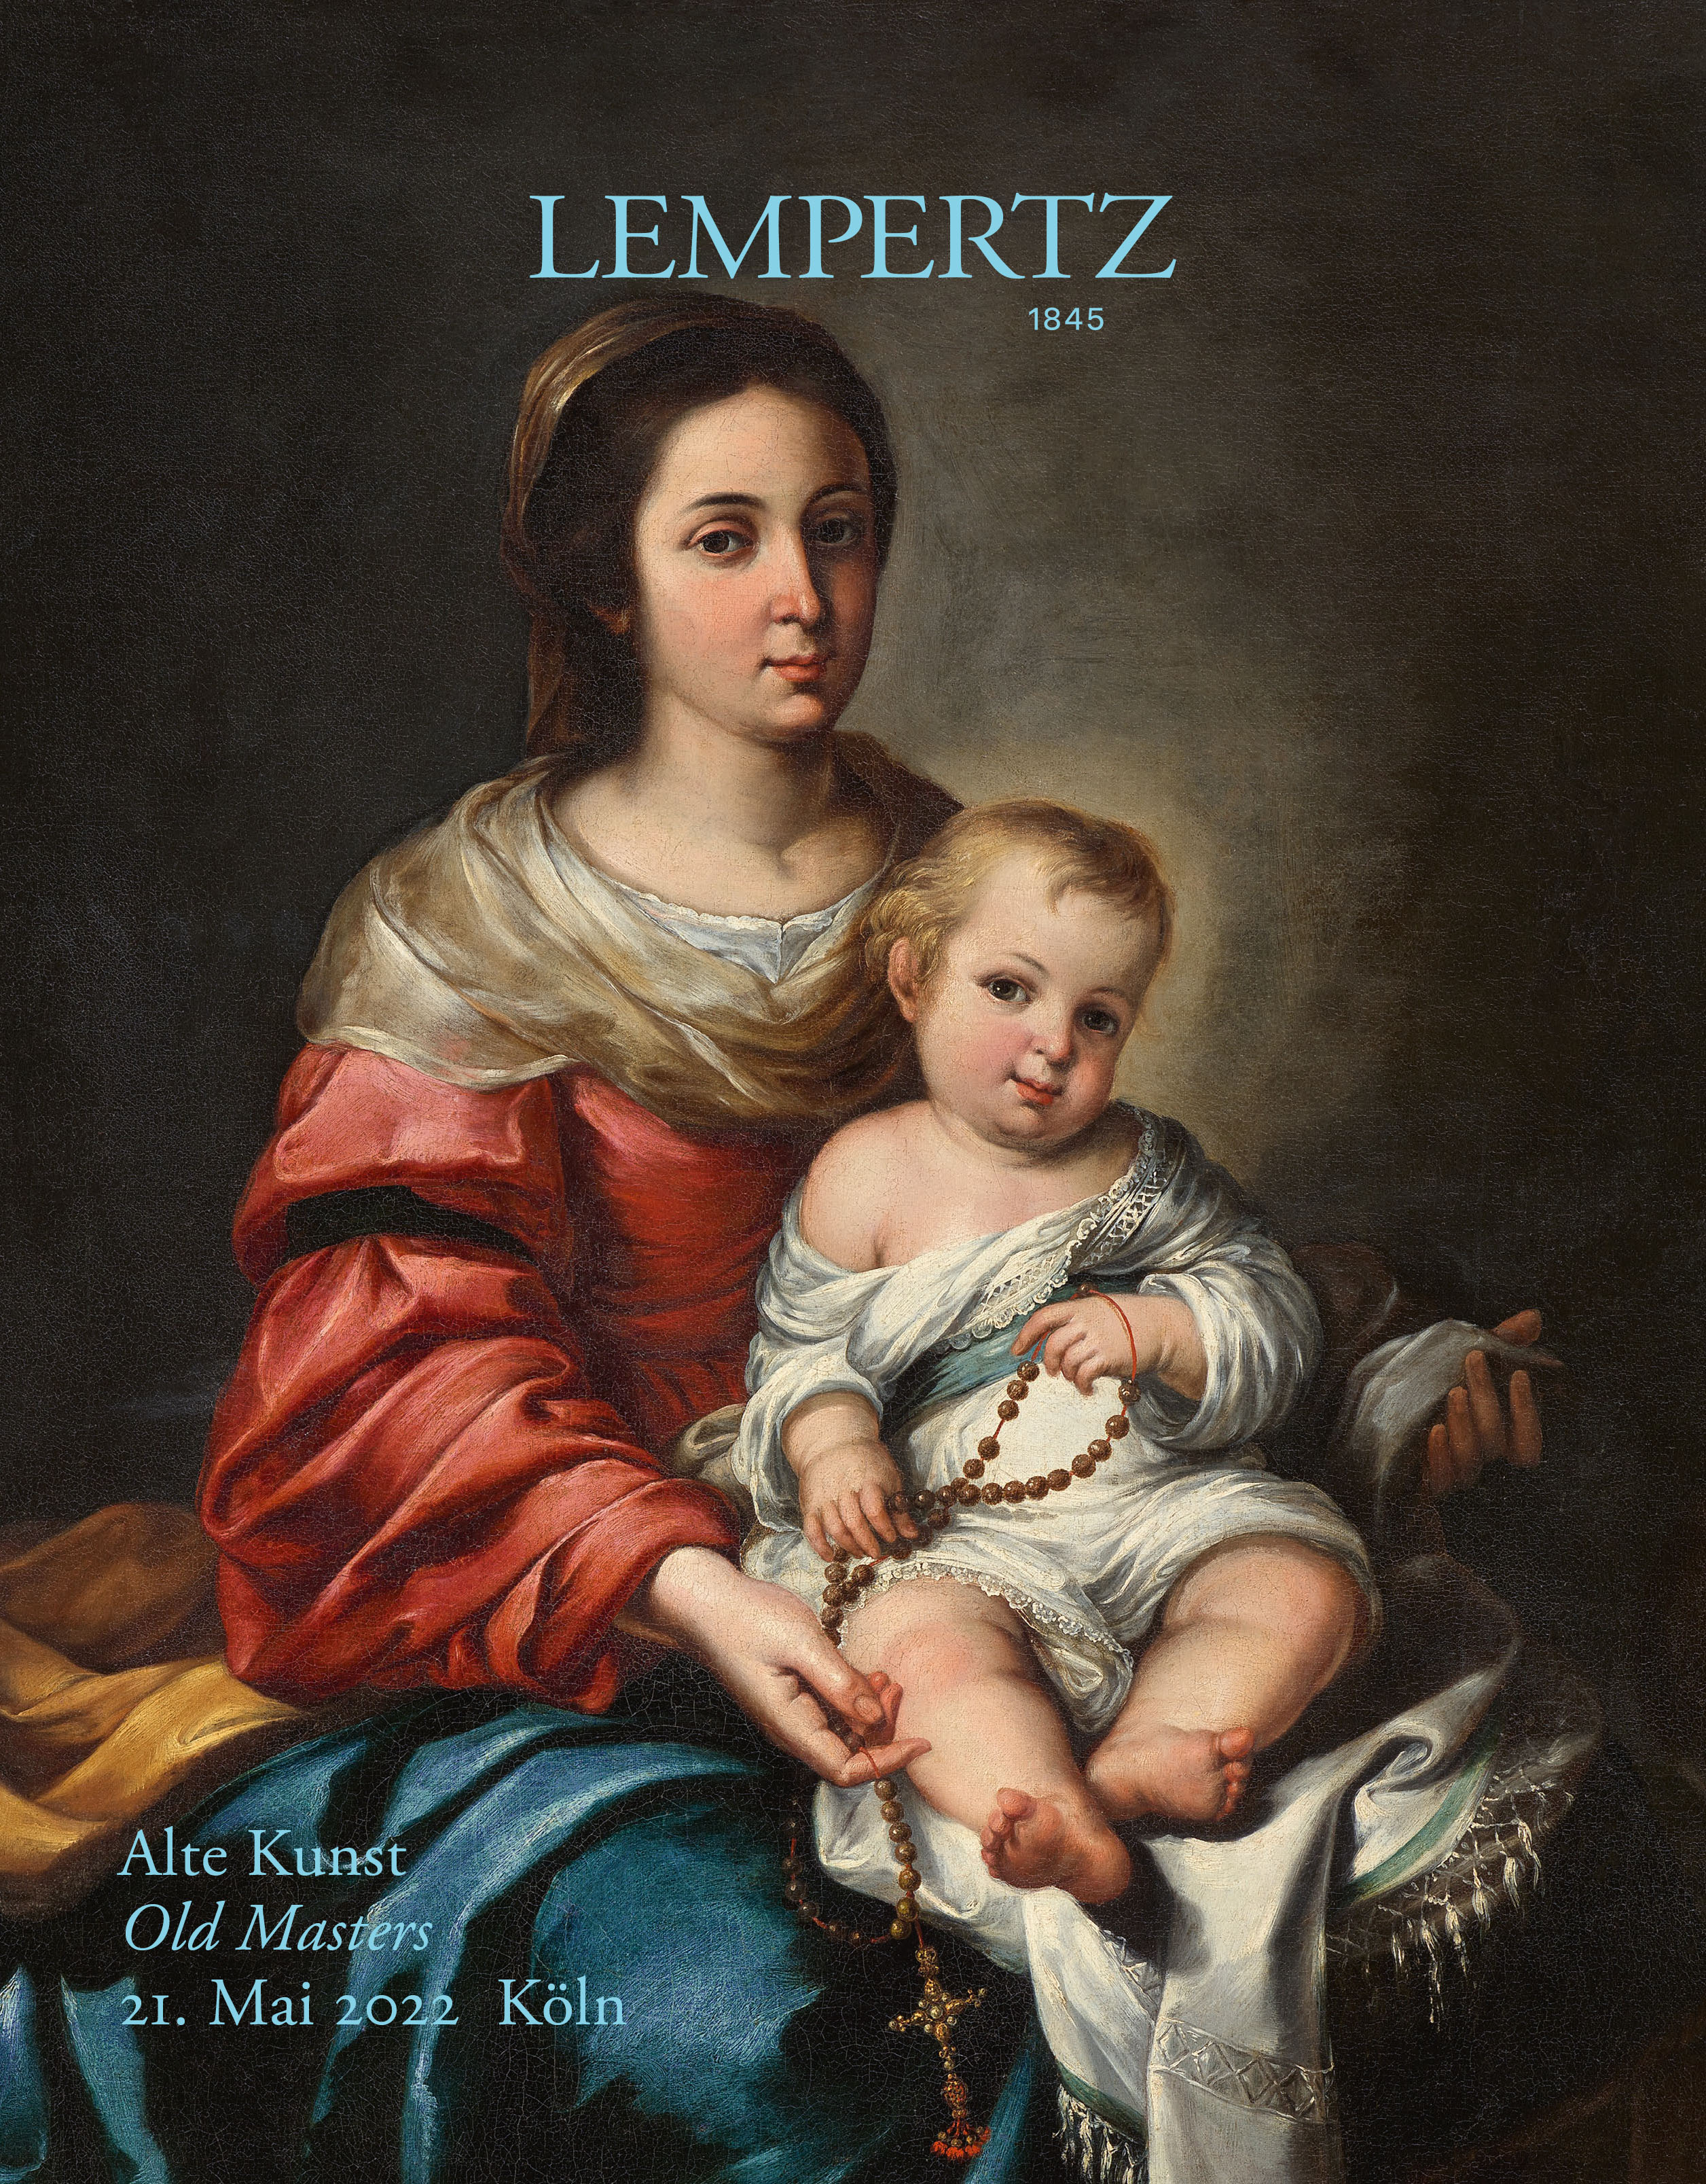 Auktionskatalog - Alte Kunst - Online Katalog - Auktion 1197 – Ersteigern Sie hochwertige Kunst in der nächsten Lempertz-Auktion!